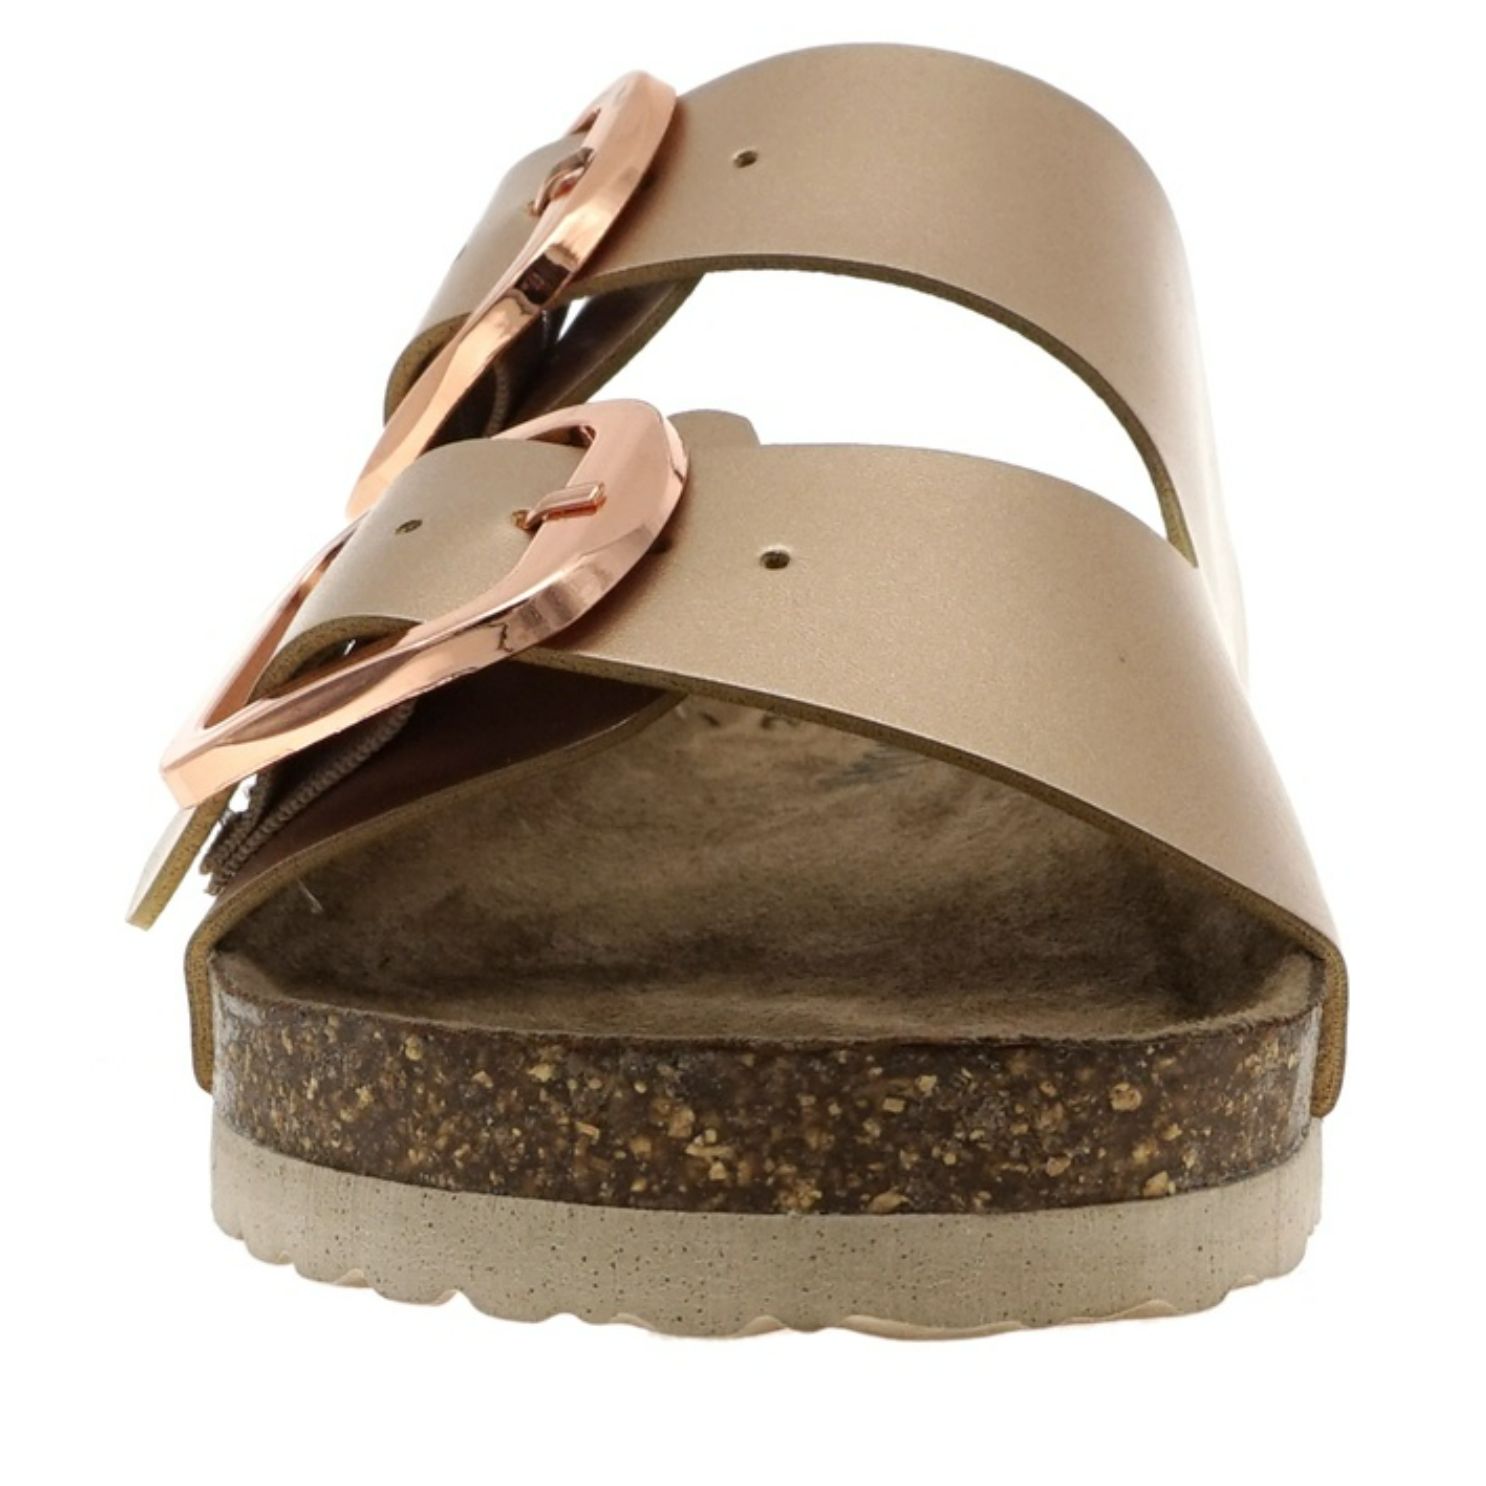 Outwood Bork Slip-on Sandal in Rose Gold- Final Sale    Shoes Olem Shoe Corp- Tilden Co.